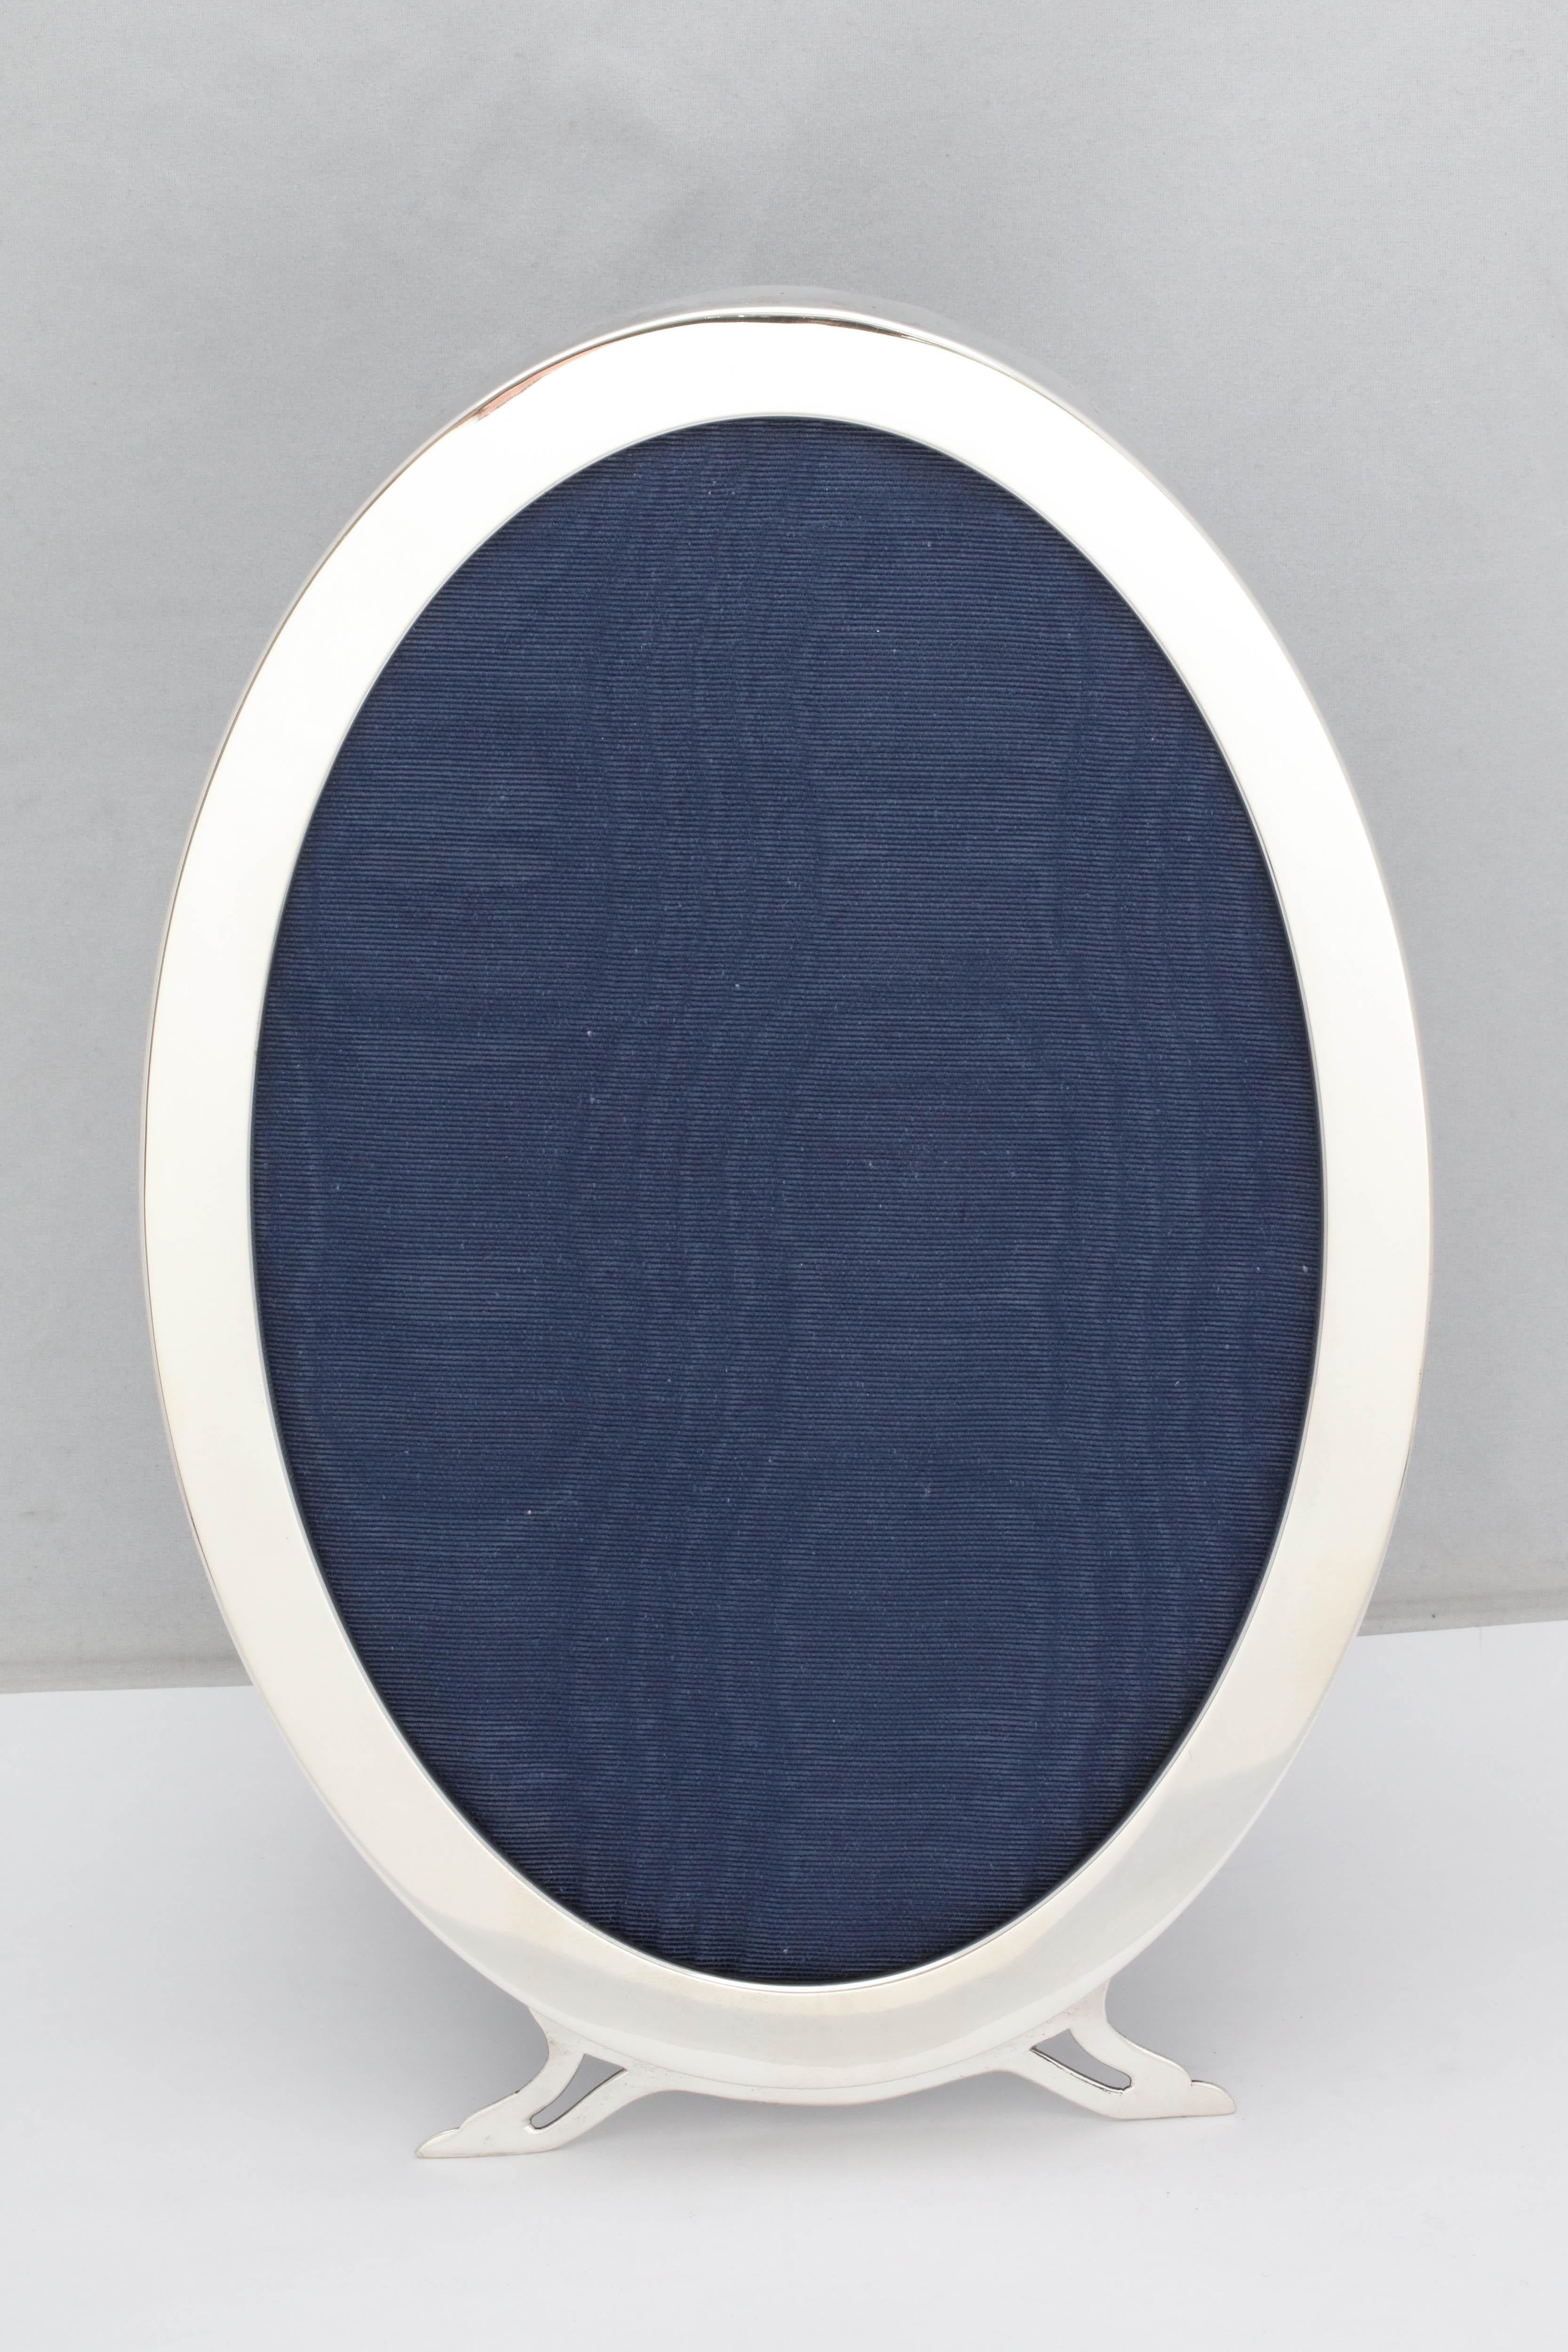 Groß, Art Nouveau Periode,  ovaler Bilderrahmen aus Sterlingsilber mit Fuß und blauem Samtrücken, London, Jahresstempel 1907, Hersteller Sebastian Henry Garrard. Anmutige Füße. Maße: 11 1/4 Zoll hoch x 7 1/4 Zoll breit x 5 3/4 Zoll tief (wenn die